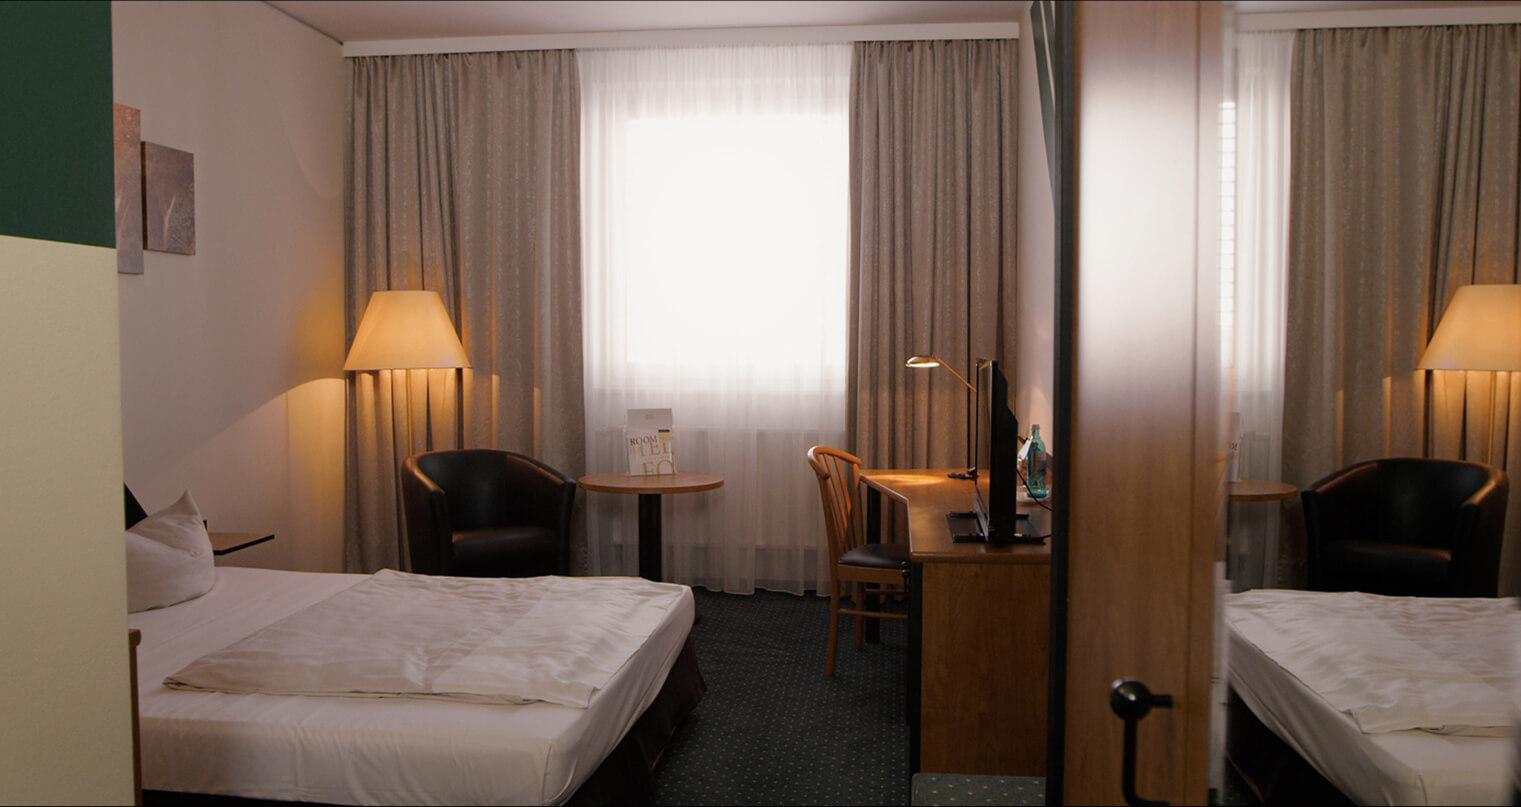 Klebefolie Hotel Zimmer Bett Tisch Schrank hell braun W945 01